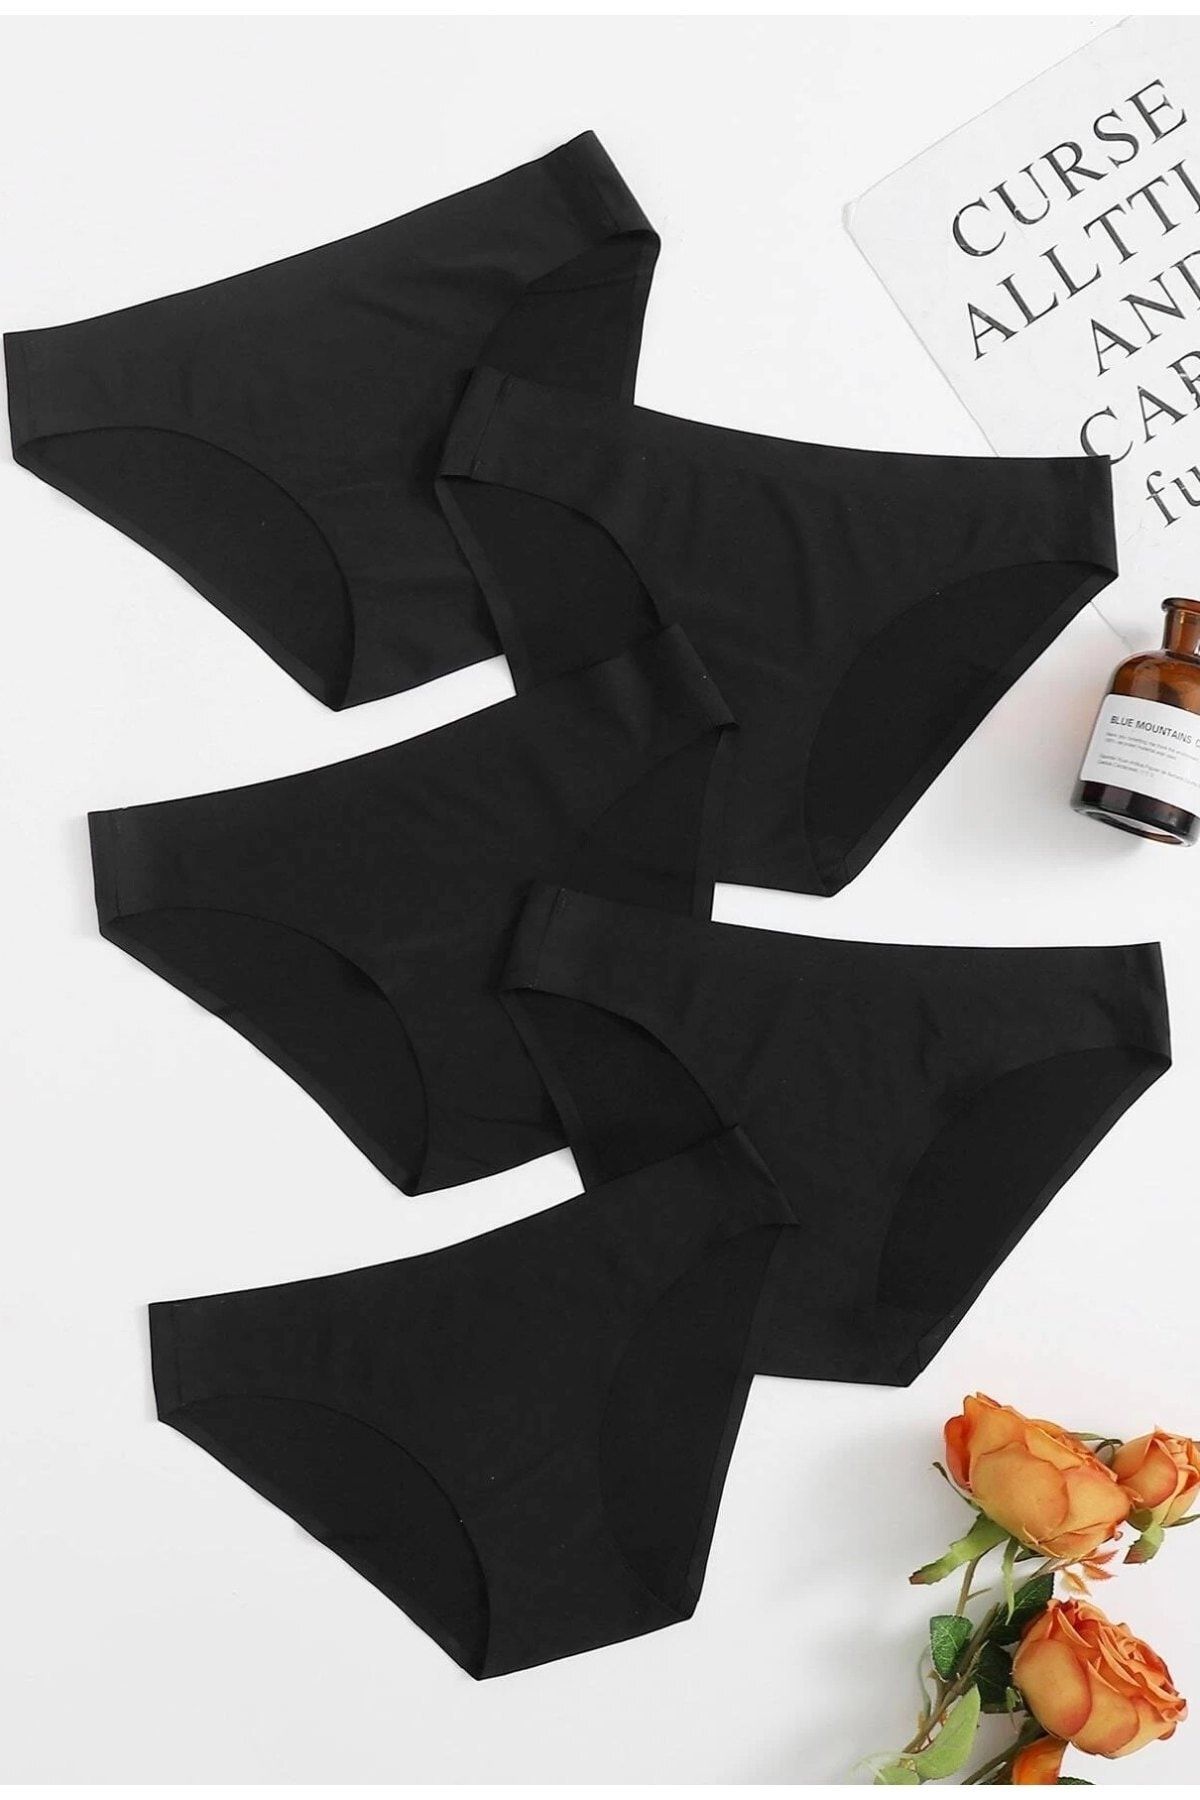 MADALİNA Women's Black Laser Cut Seamless Non-marking Panties 5